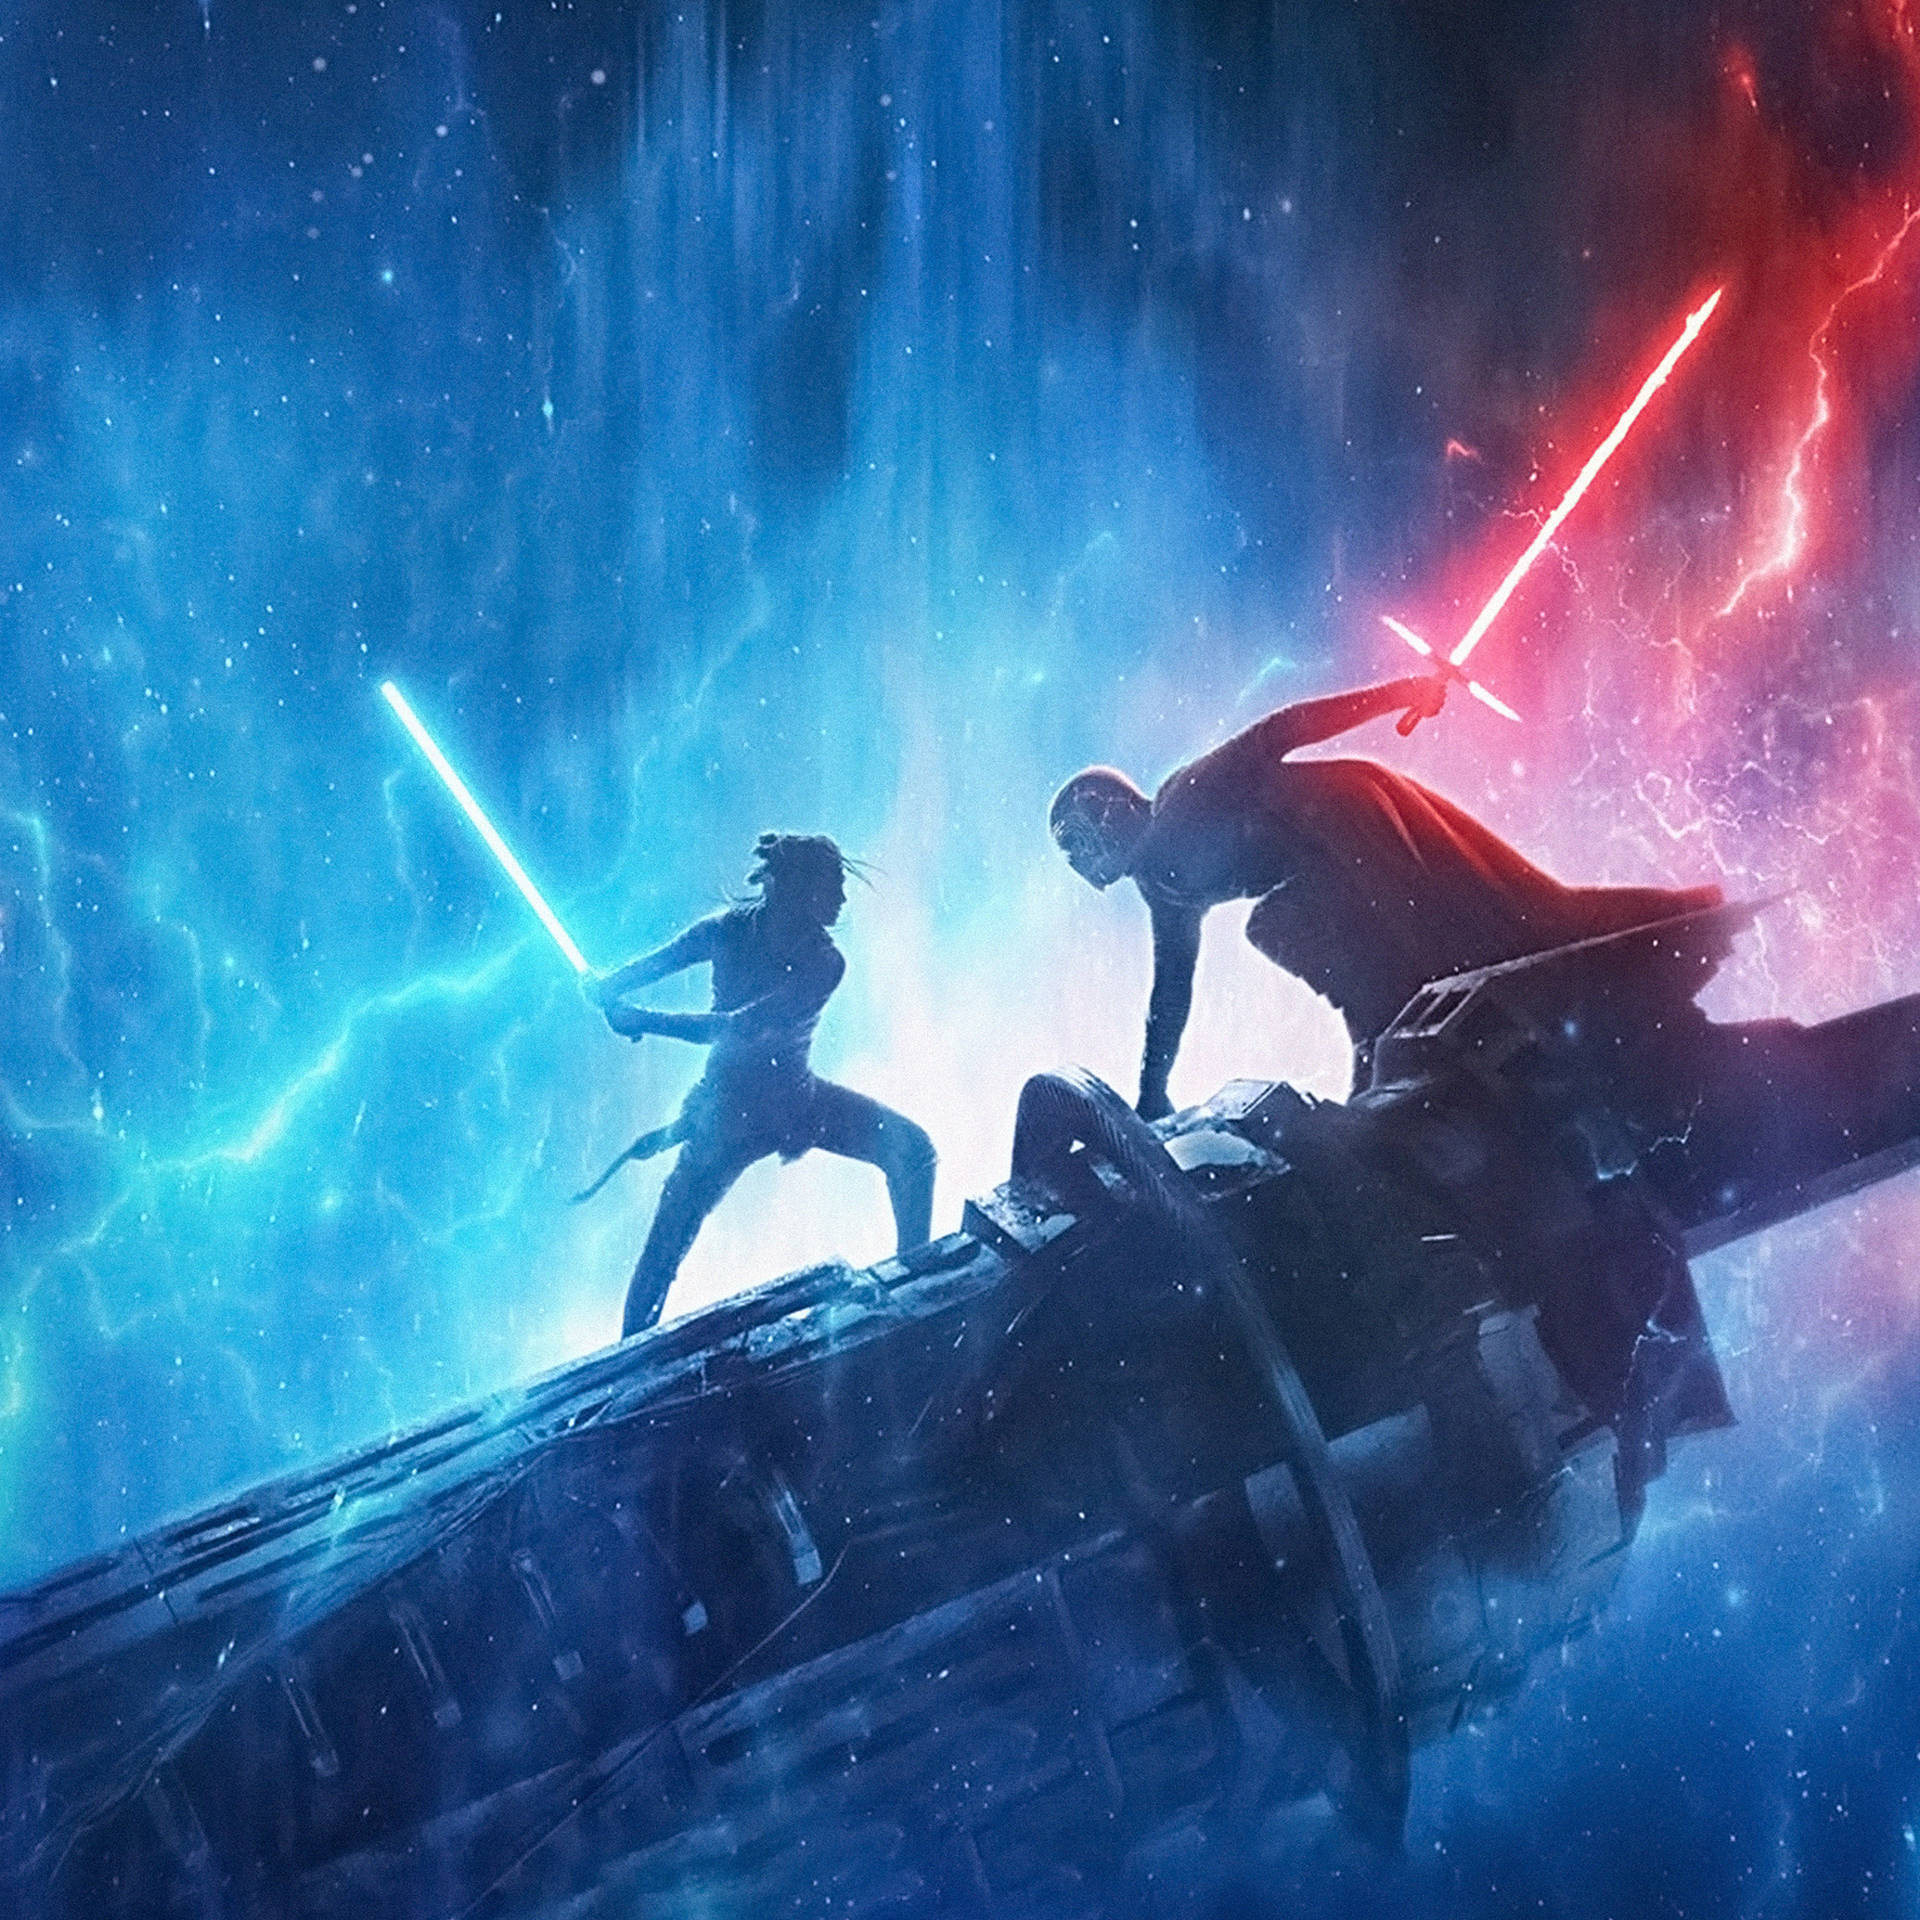 Star Wars Ipad Rey And Kylo Ren Wallpaper